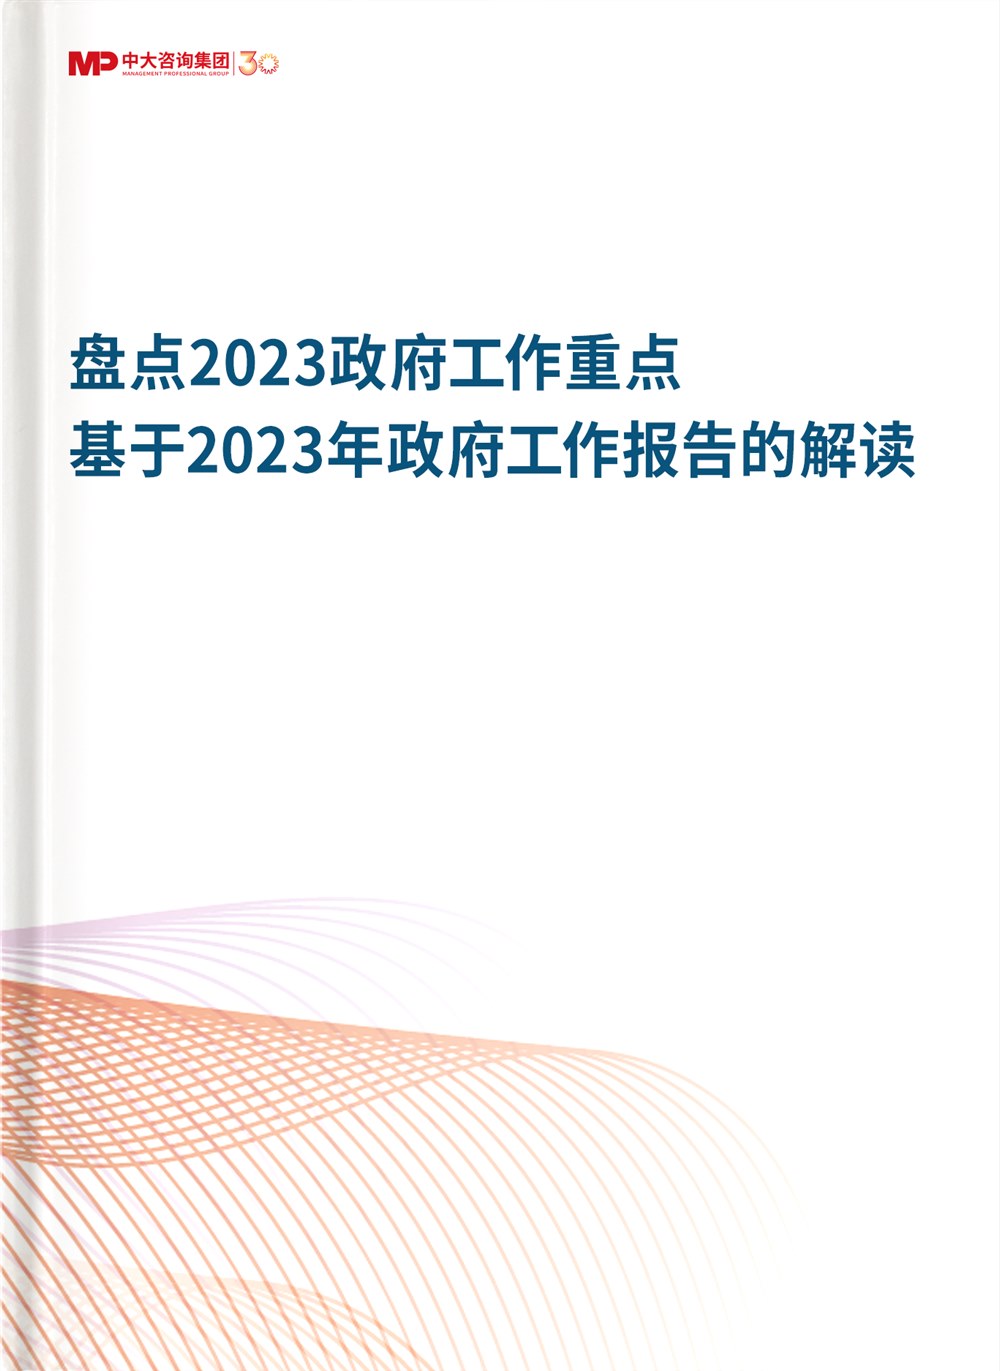 盘点2023政府工作重点——基于2023年政府工作报告的解读